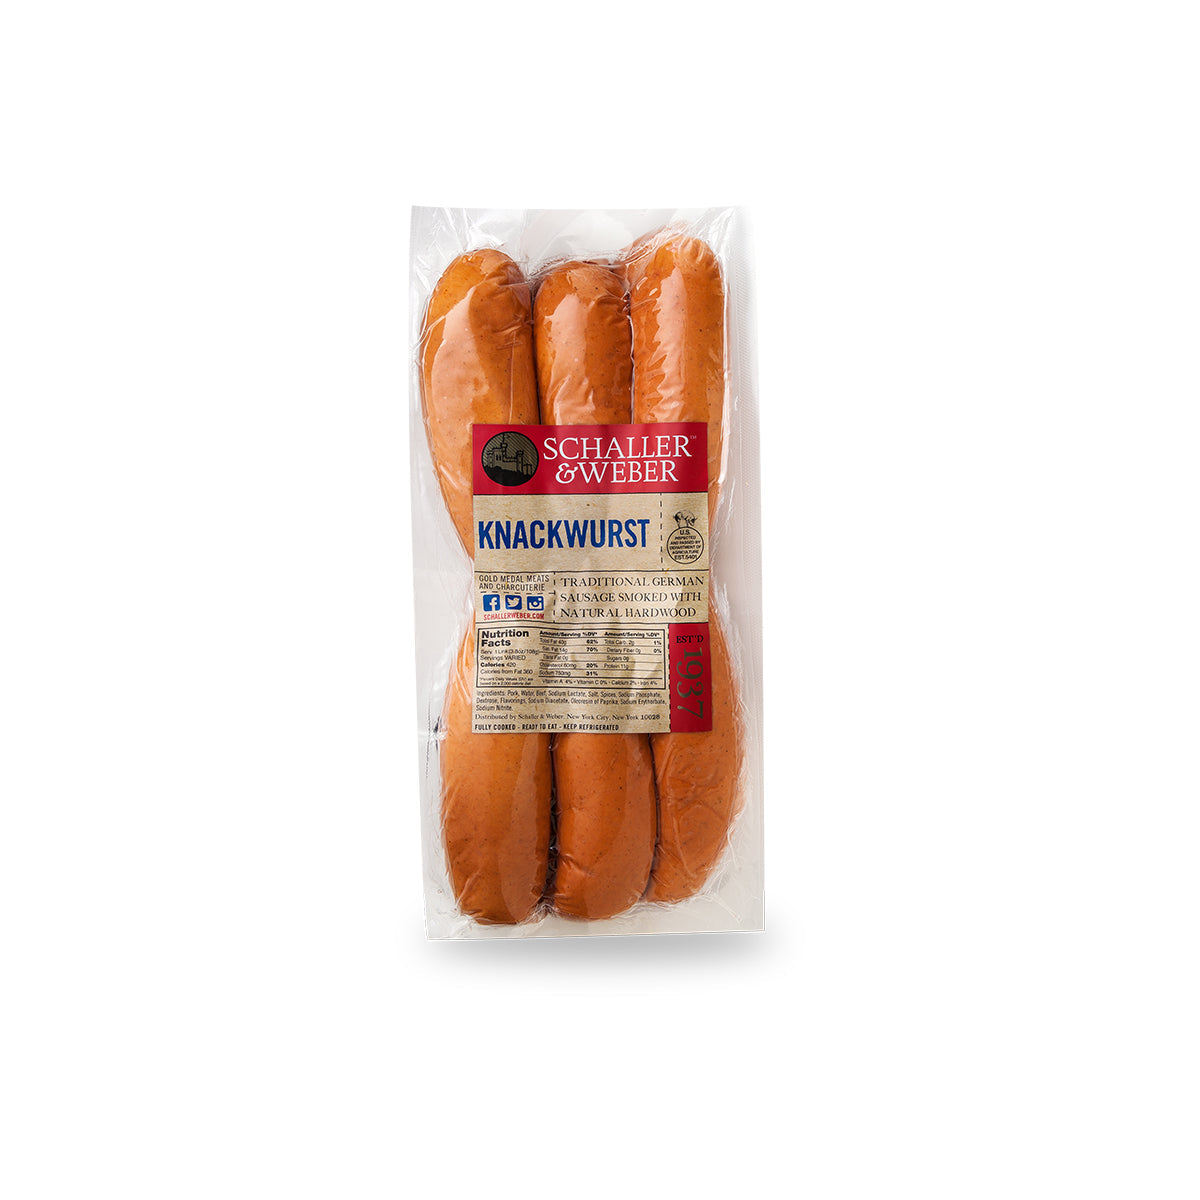 Schaller & Weber Knackwurst Sausages